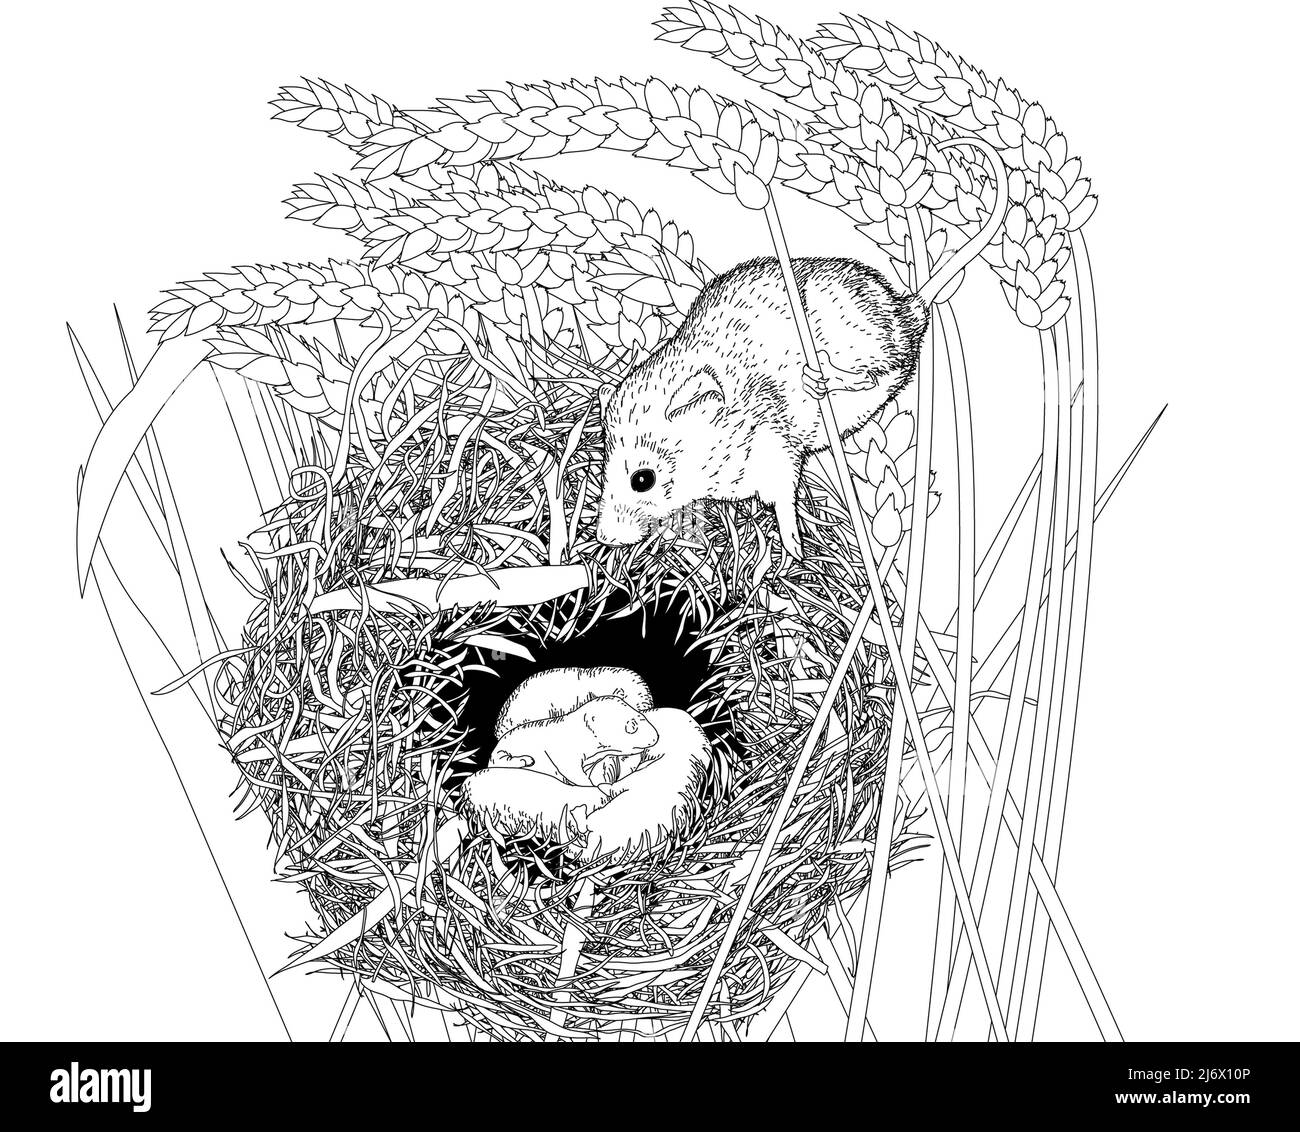 Ilustración de línea blanca y negra de un ratón de madera europeo (Apodemus sylvaticus)/ratón de campo sobre su nido. Libro arte, educativo, hoja de trabajo de actividades. Foto de stock